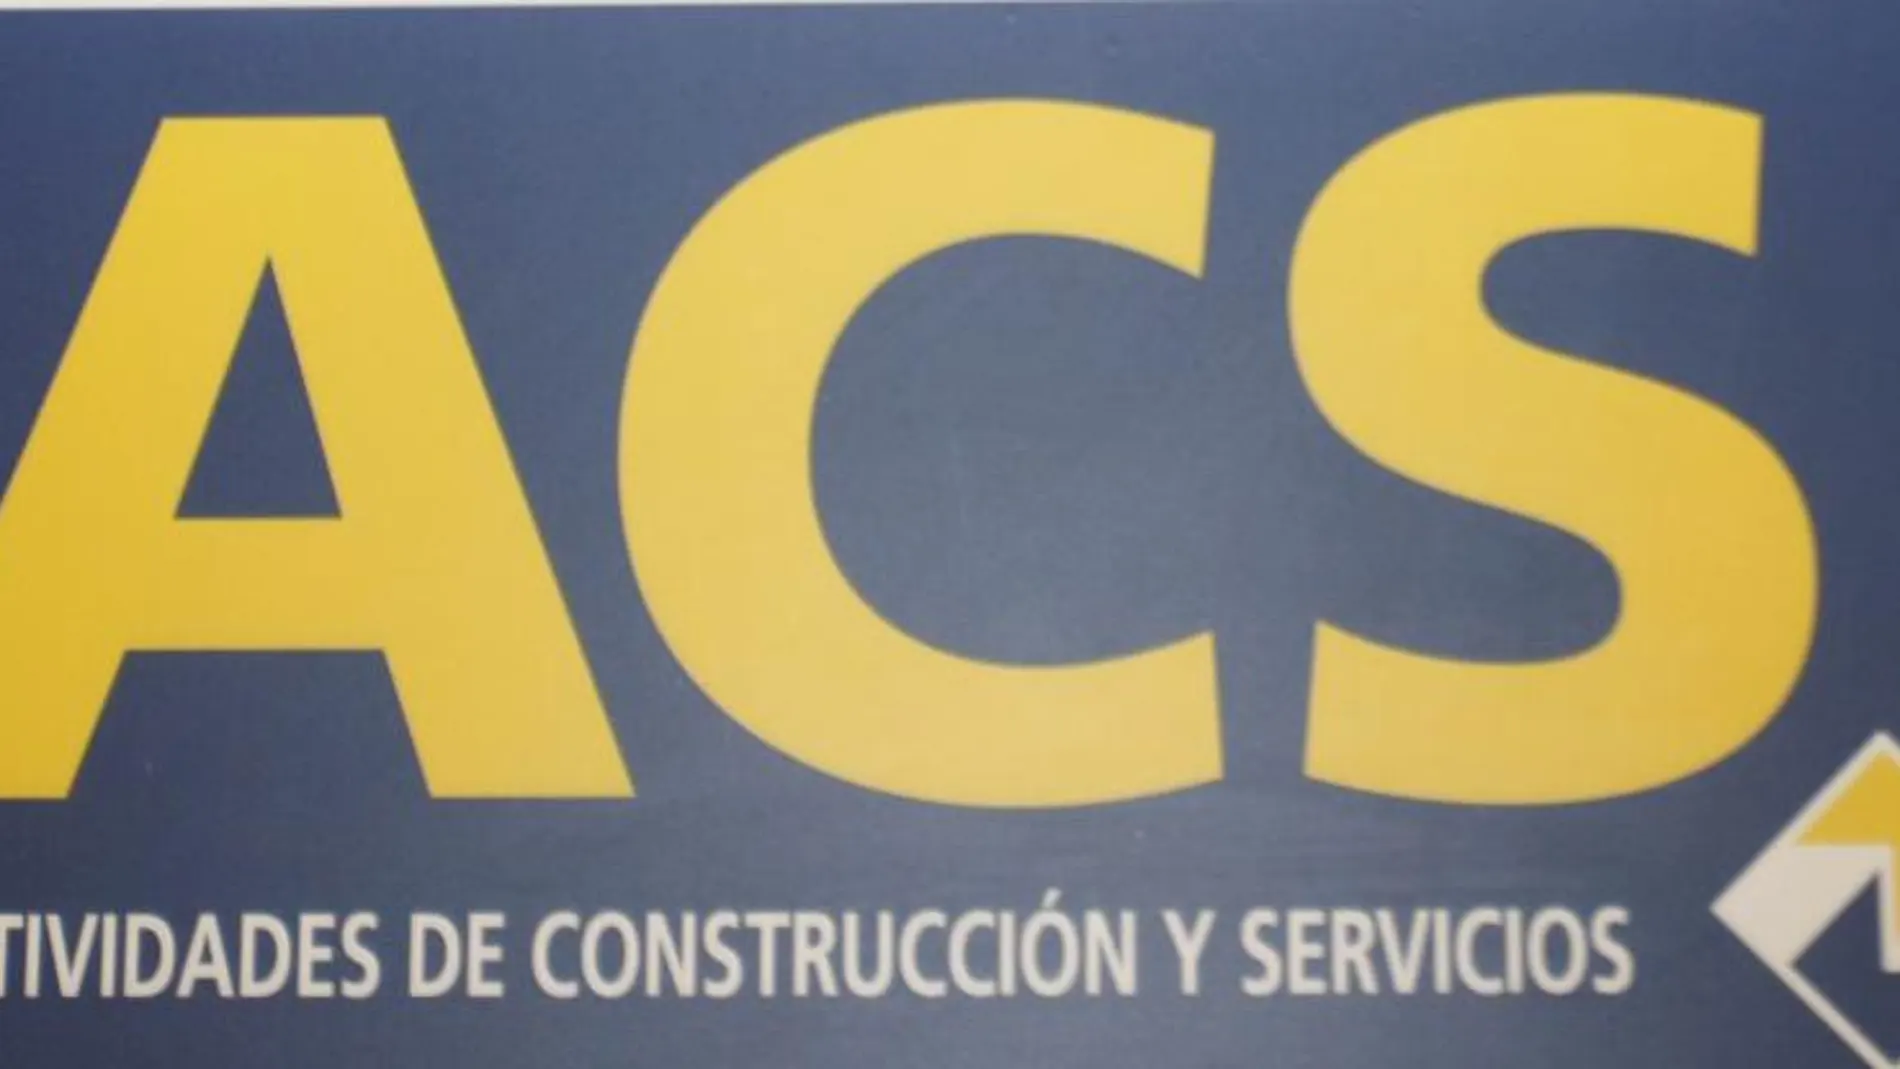 ACS ganó 702 millones en 2013 frente a las pérdidas de 1.928 millones de 2012